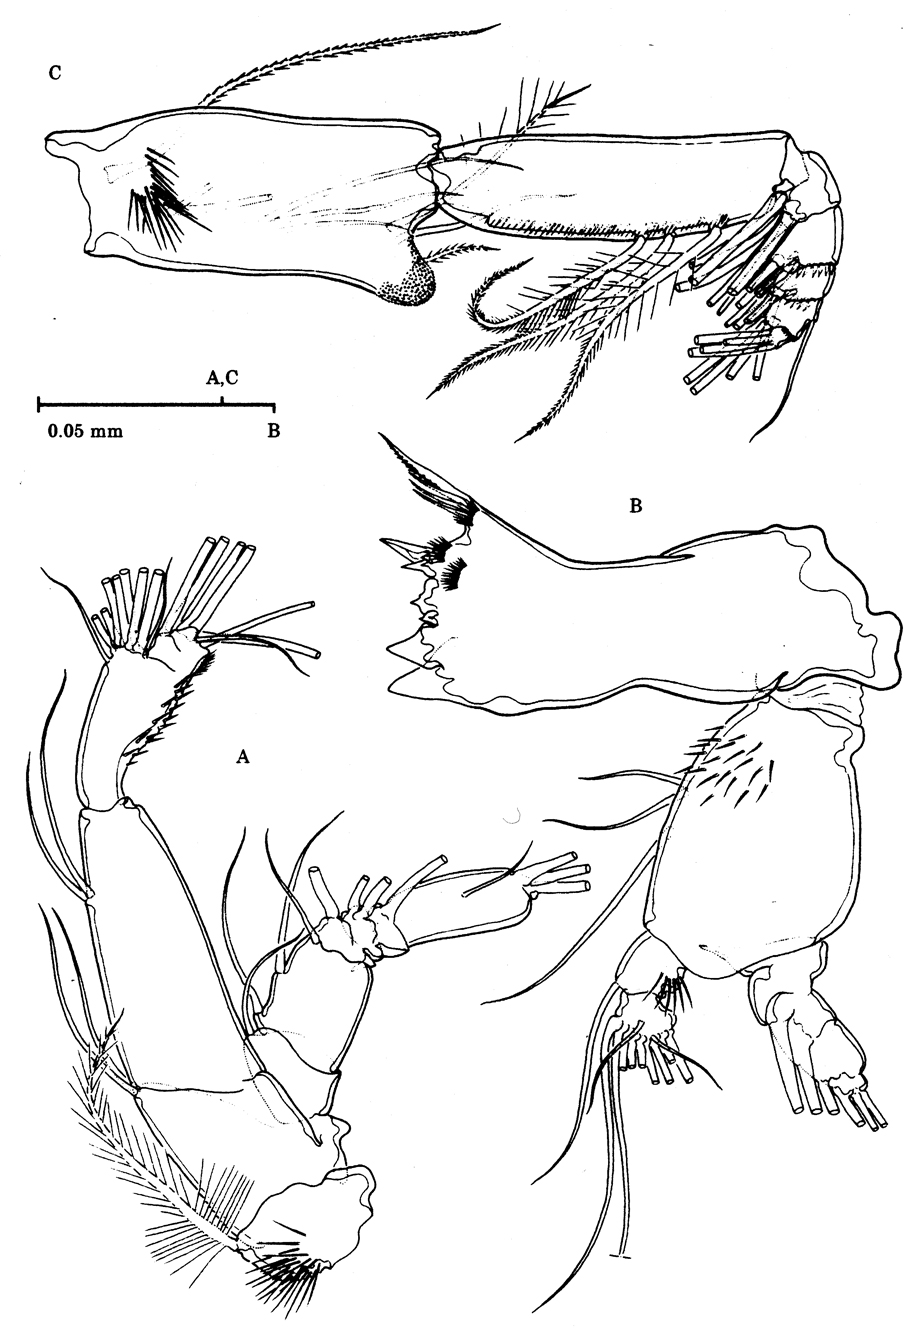 Espèce Stygocyclopia australis - Planche 4 de figures morphologiques